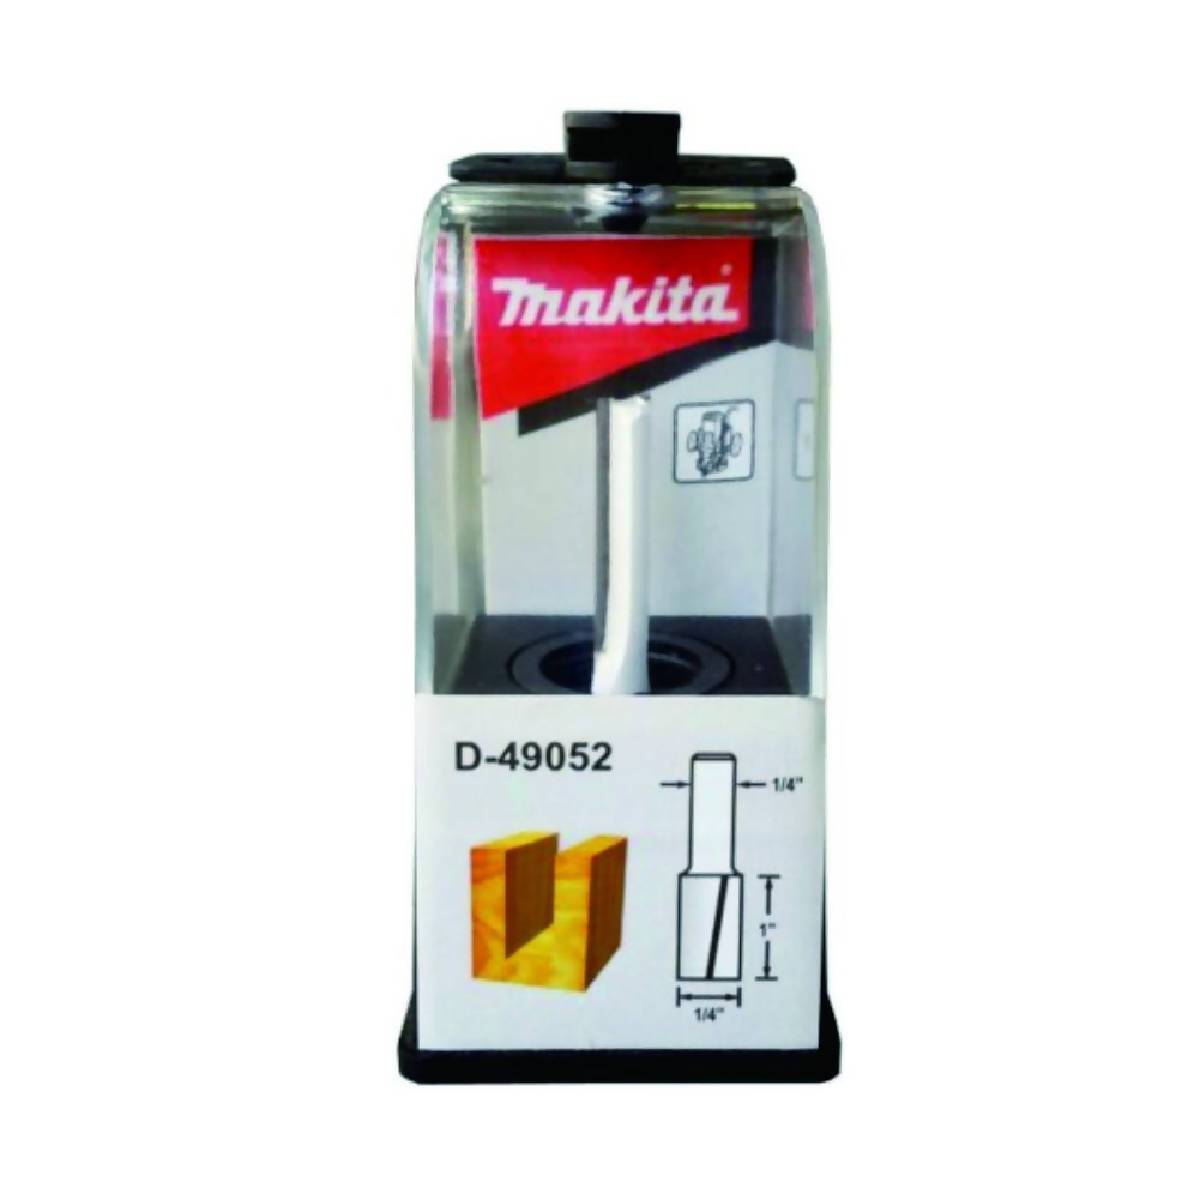 Makita D-49052 Straight Bit Flute 1/4"